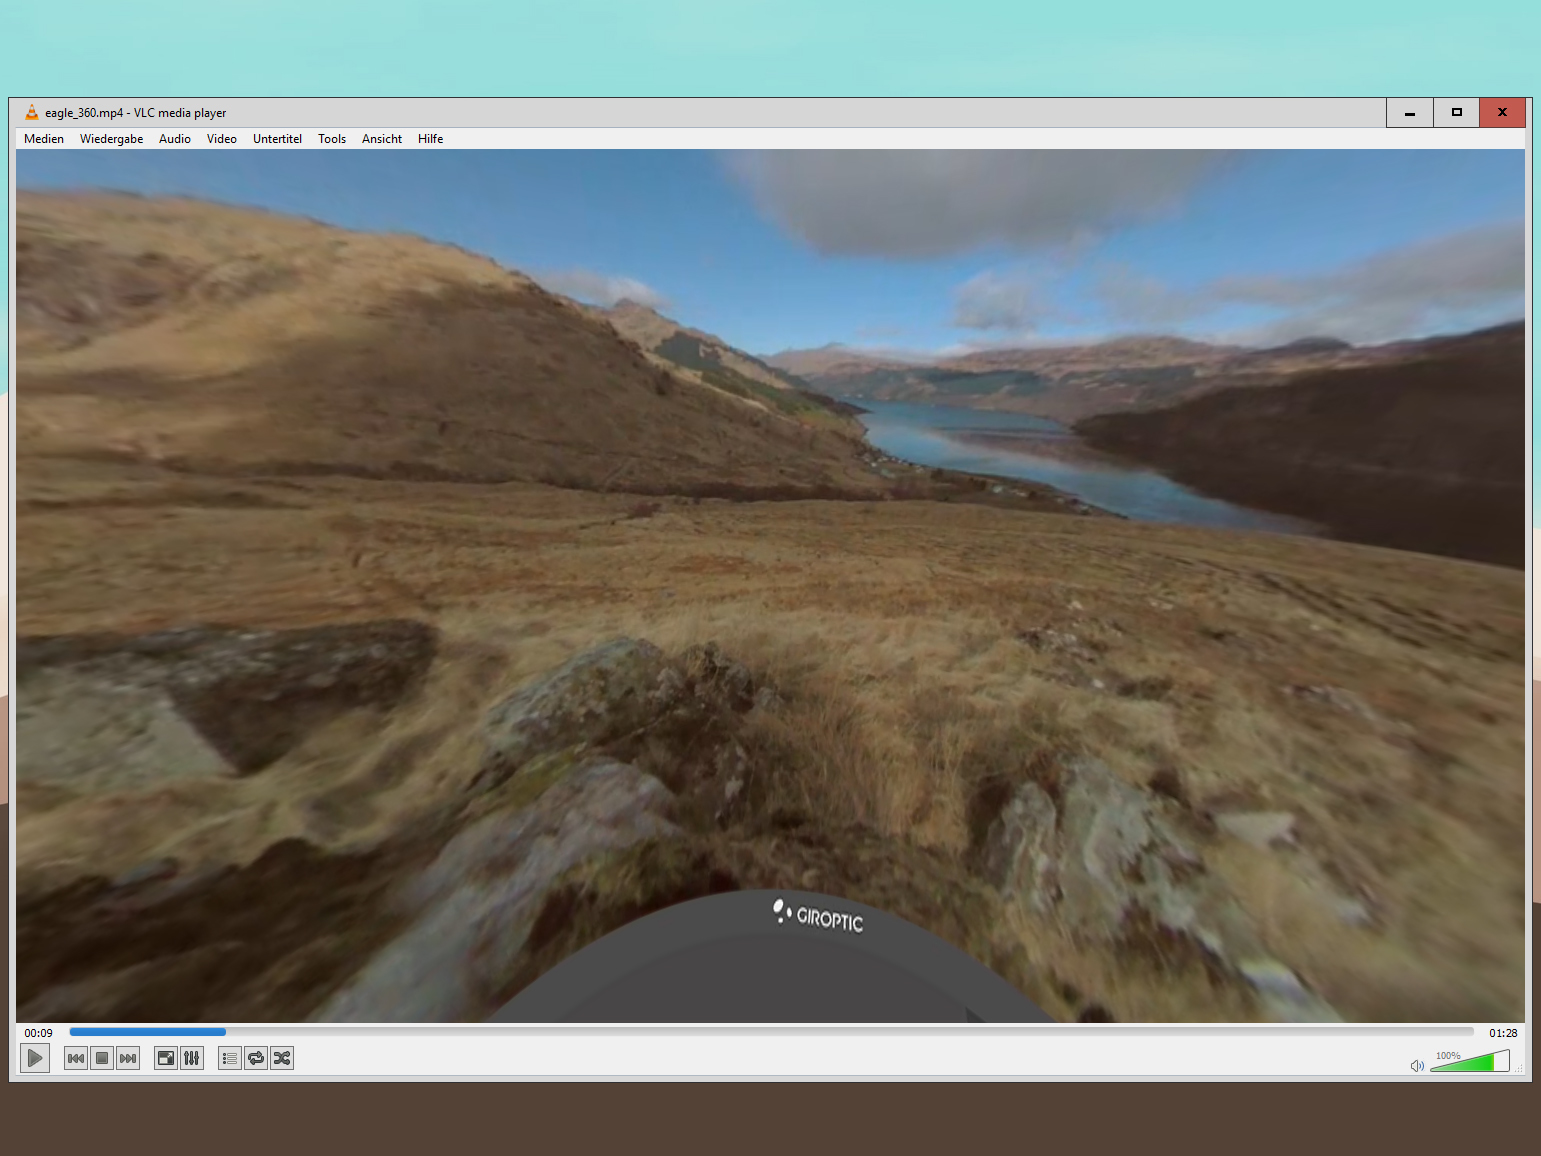 С 360-градусной версией известного VLC media player теперь вы также можете бесплатно смотреть 360-градусные видео и изображения на вашем компьютере